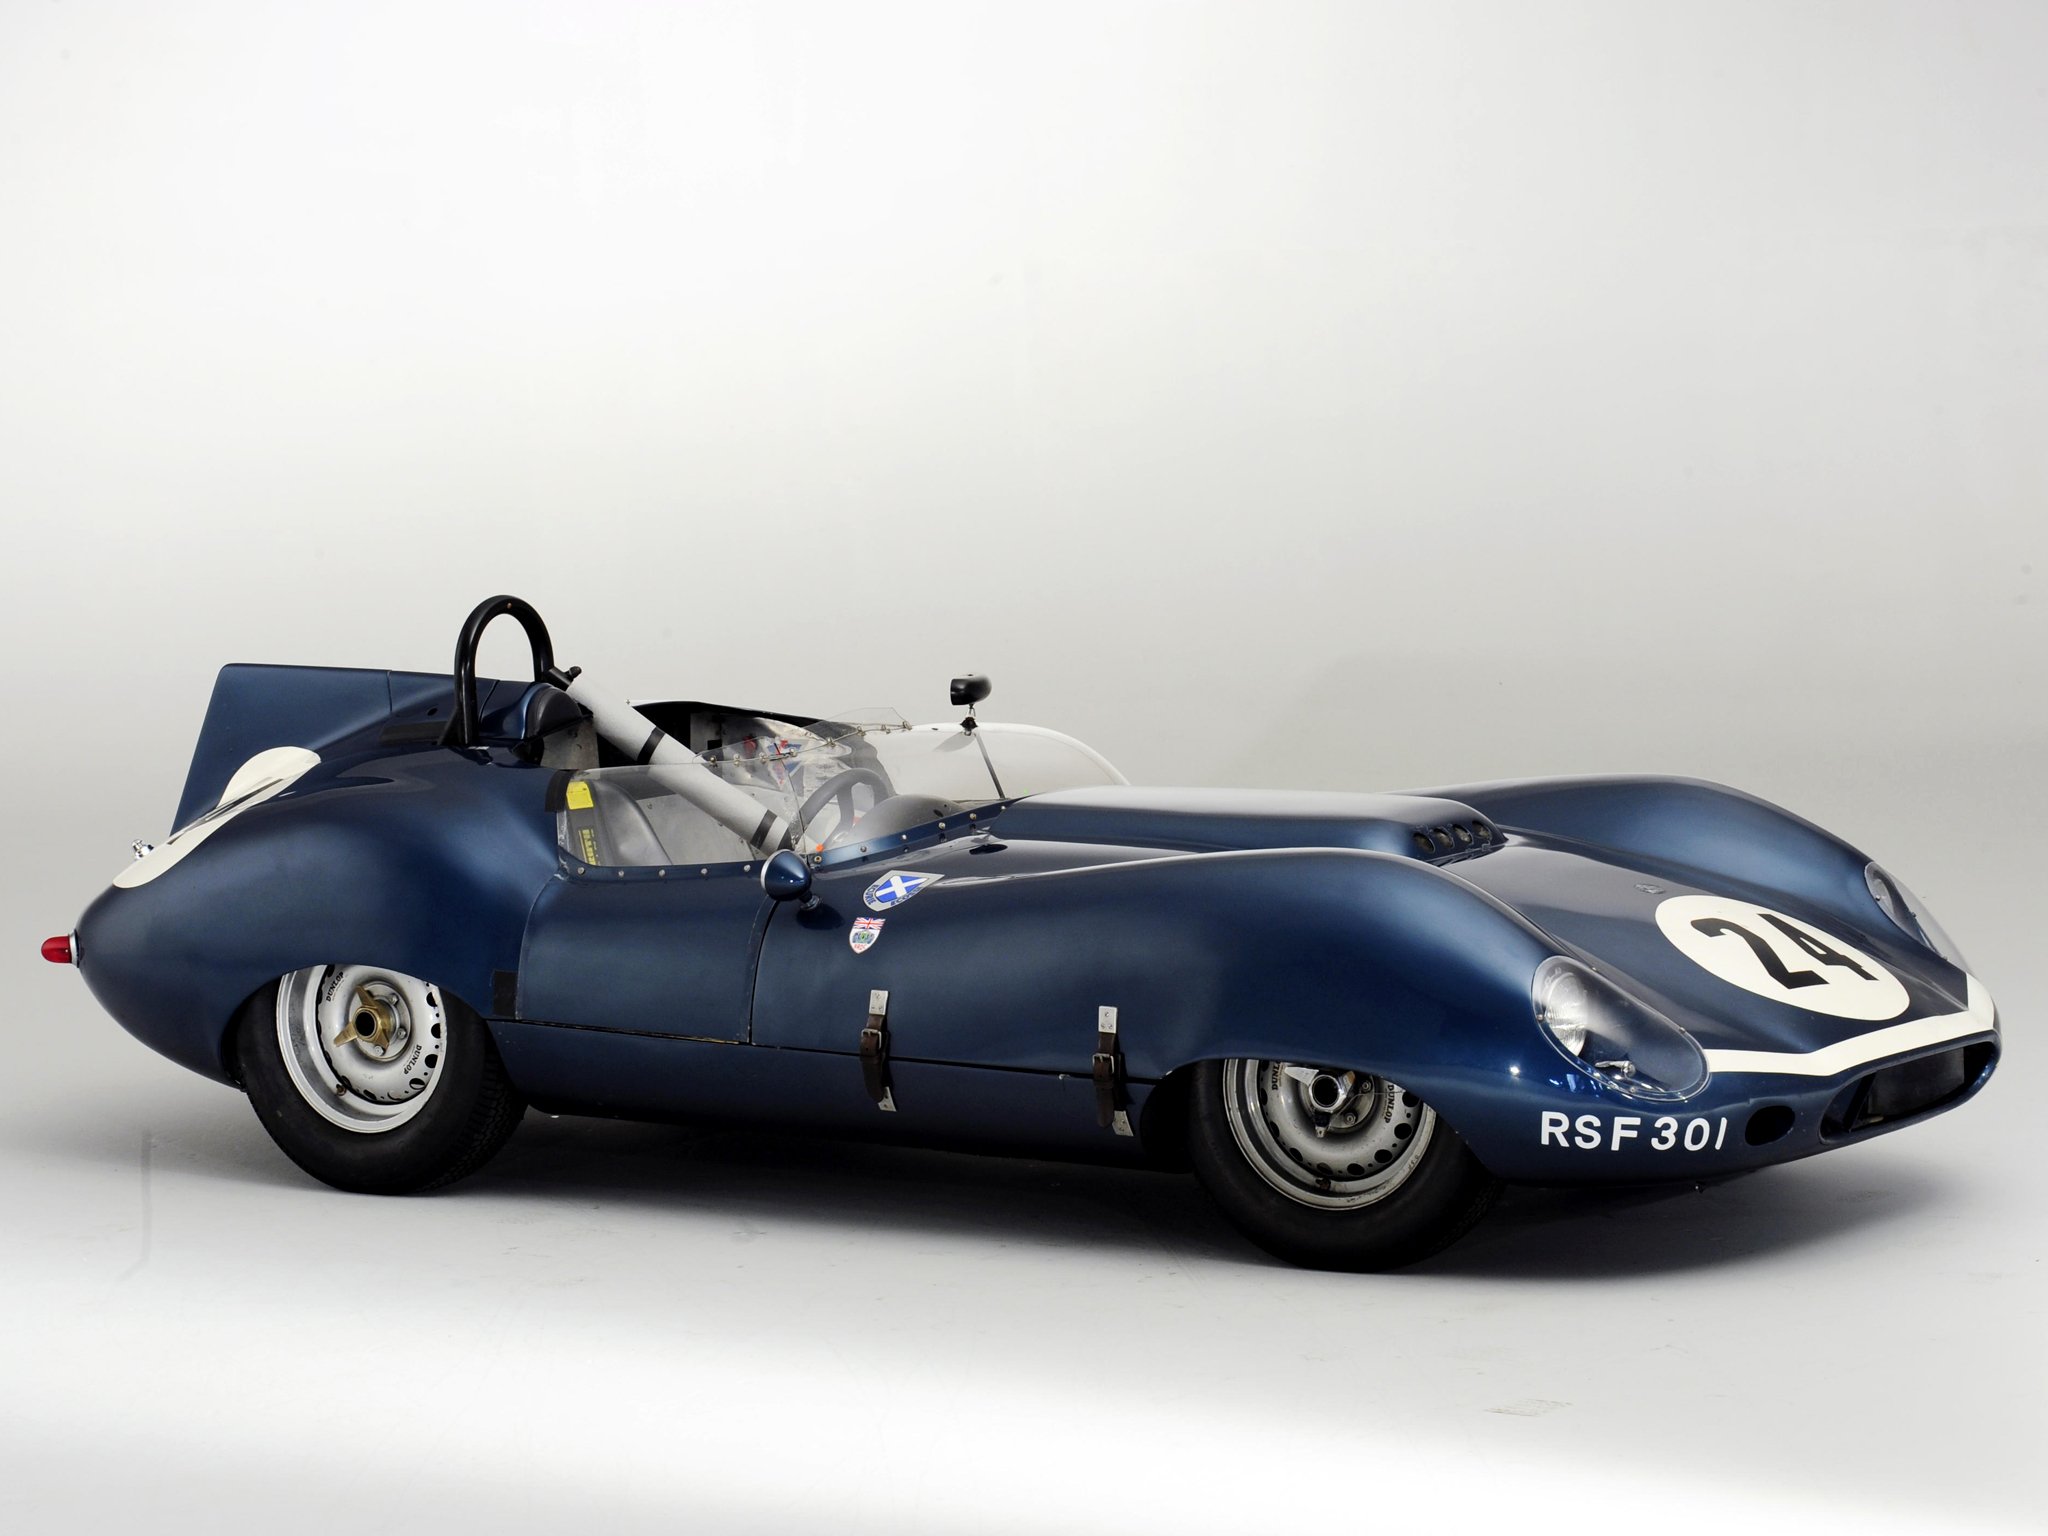 1959, Tojeiro, Jaguar, Sports, Racer, Race, Racing, Retro, Rally Wallpaper